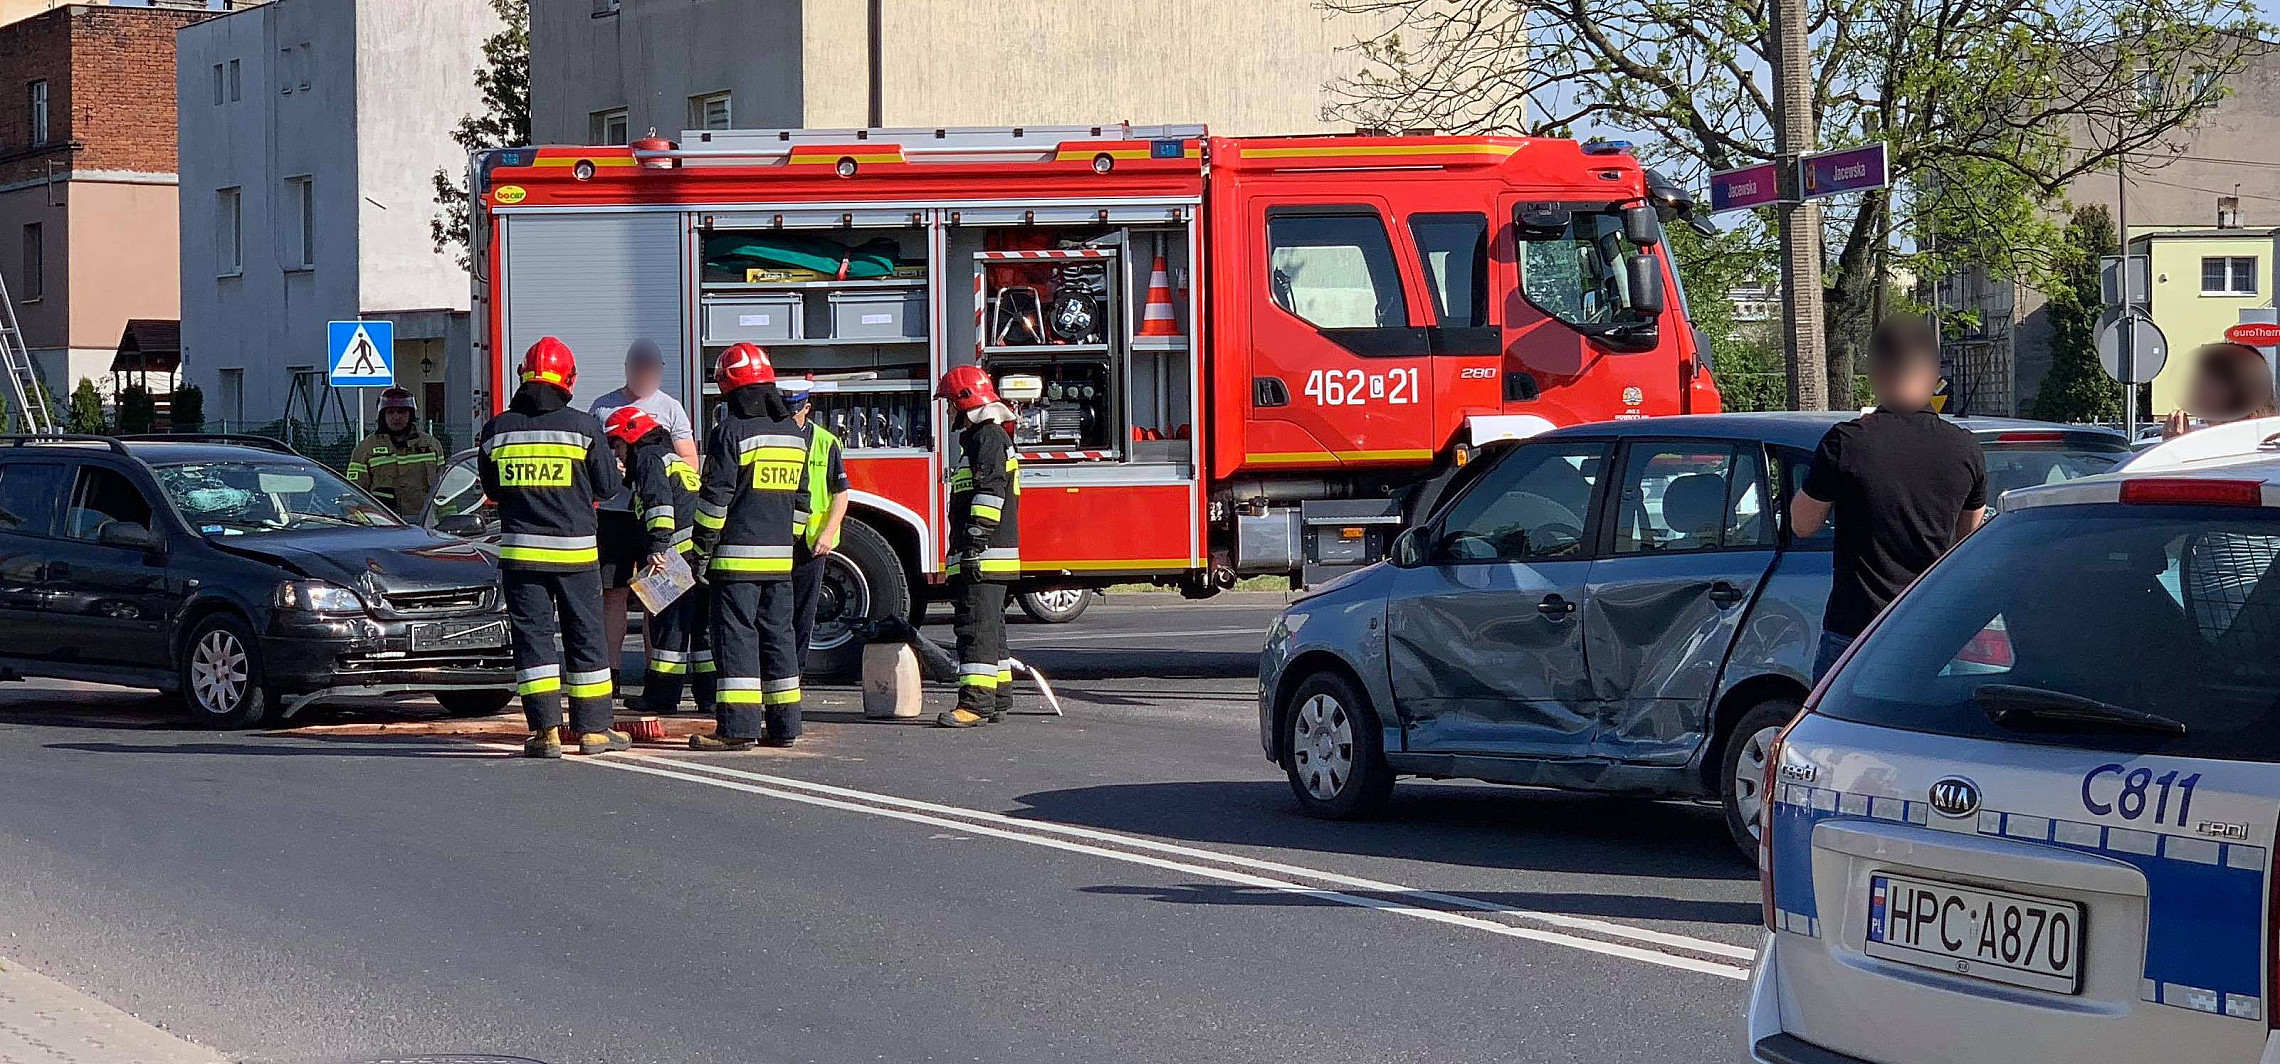 Inowrocław - Duże utrudnienia po zderzeniu dwóch aut